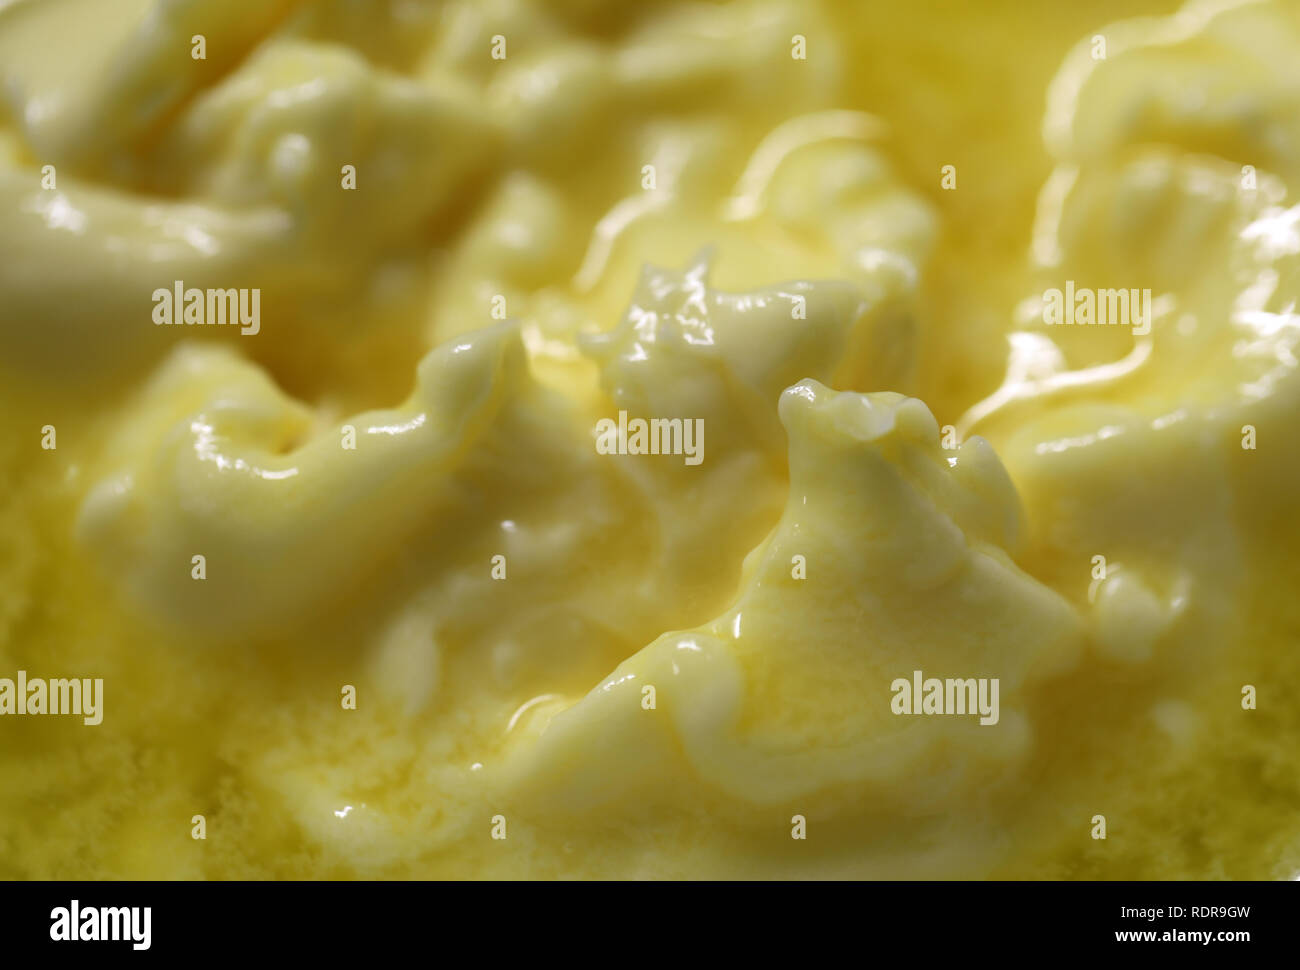 Cerca de la mitad de la mantequilla derretida. En esta foto, se puede ver la superficie de amarillo mantequilla. Parece casi montañas de mantequilla y mantequilla lago. Foto de stock